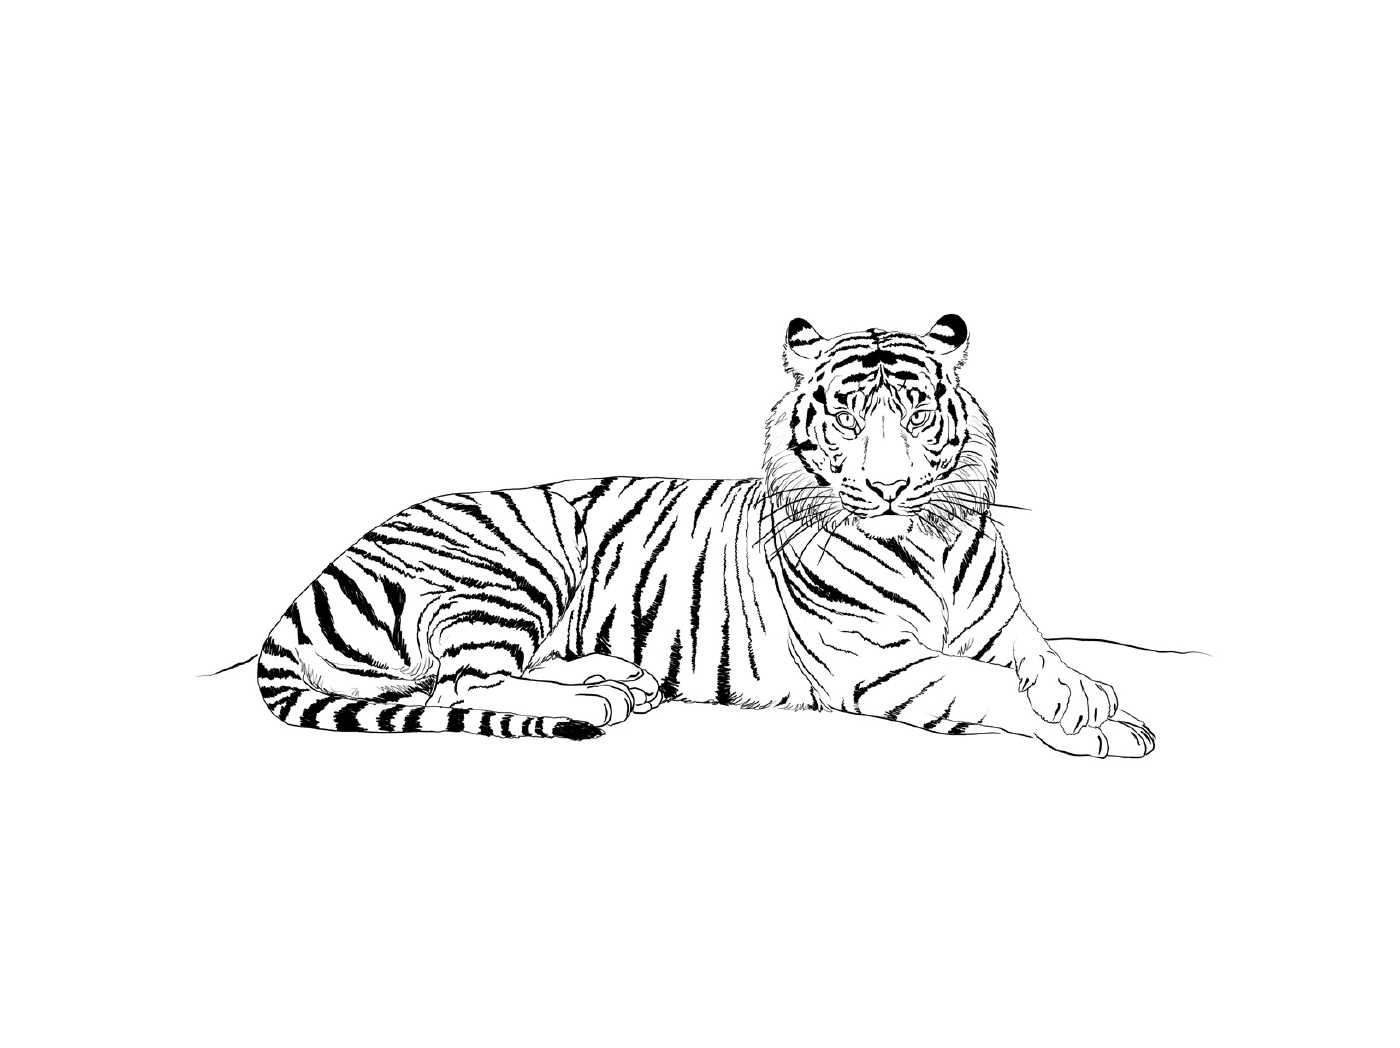  एक यथार्थवादी बाघ 